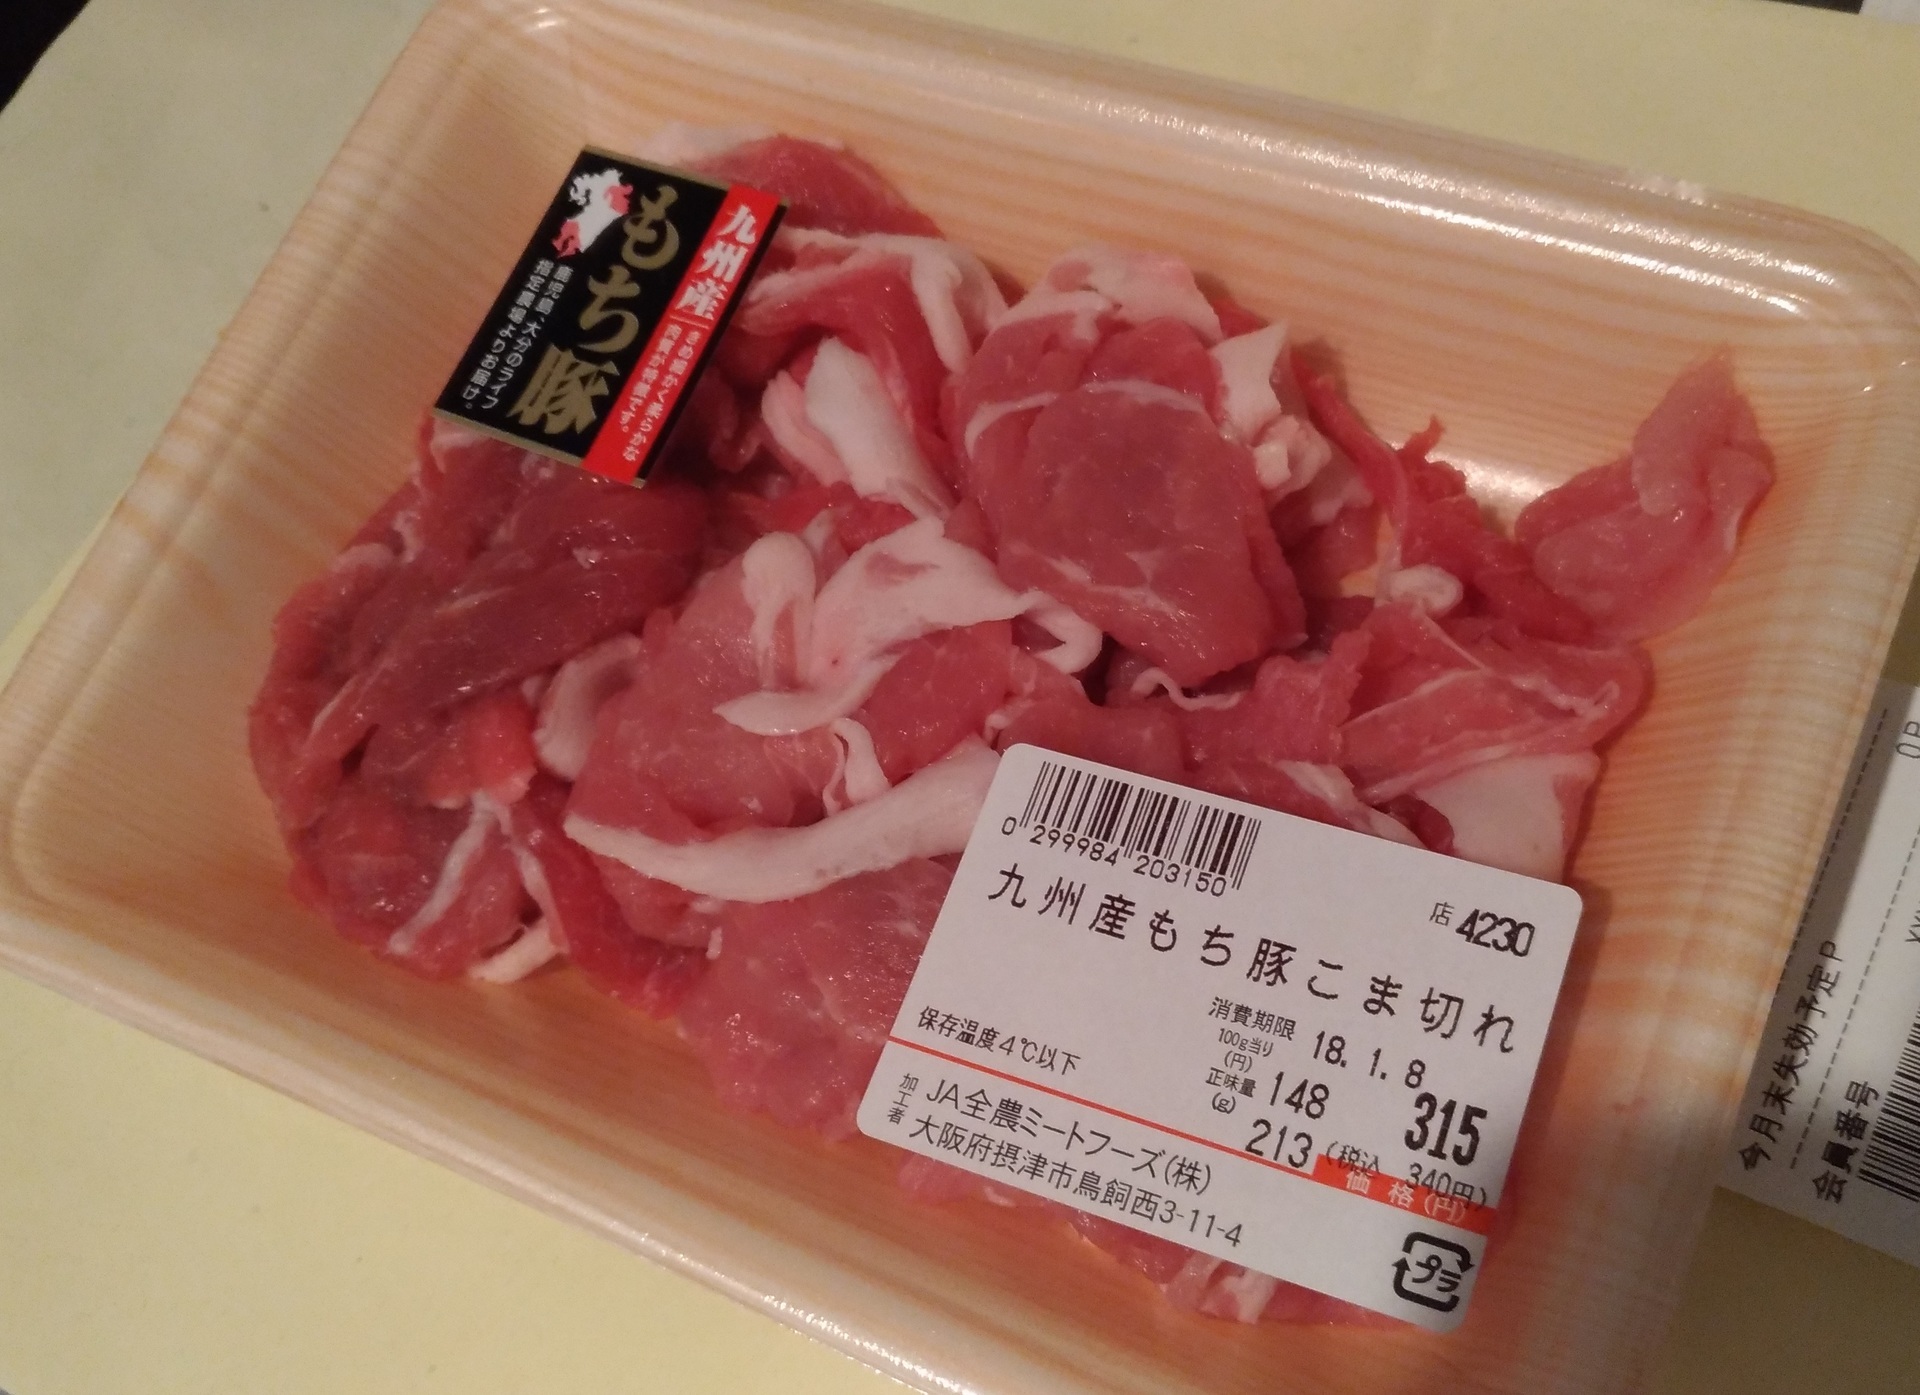 スーパーライフ精肉】九州産もち豚こま切れ、国産が買いたい: 【スーパーライフ】大阪おすすめお惣菜野菜をブログでポイントも